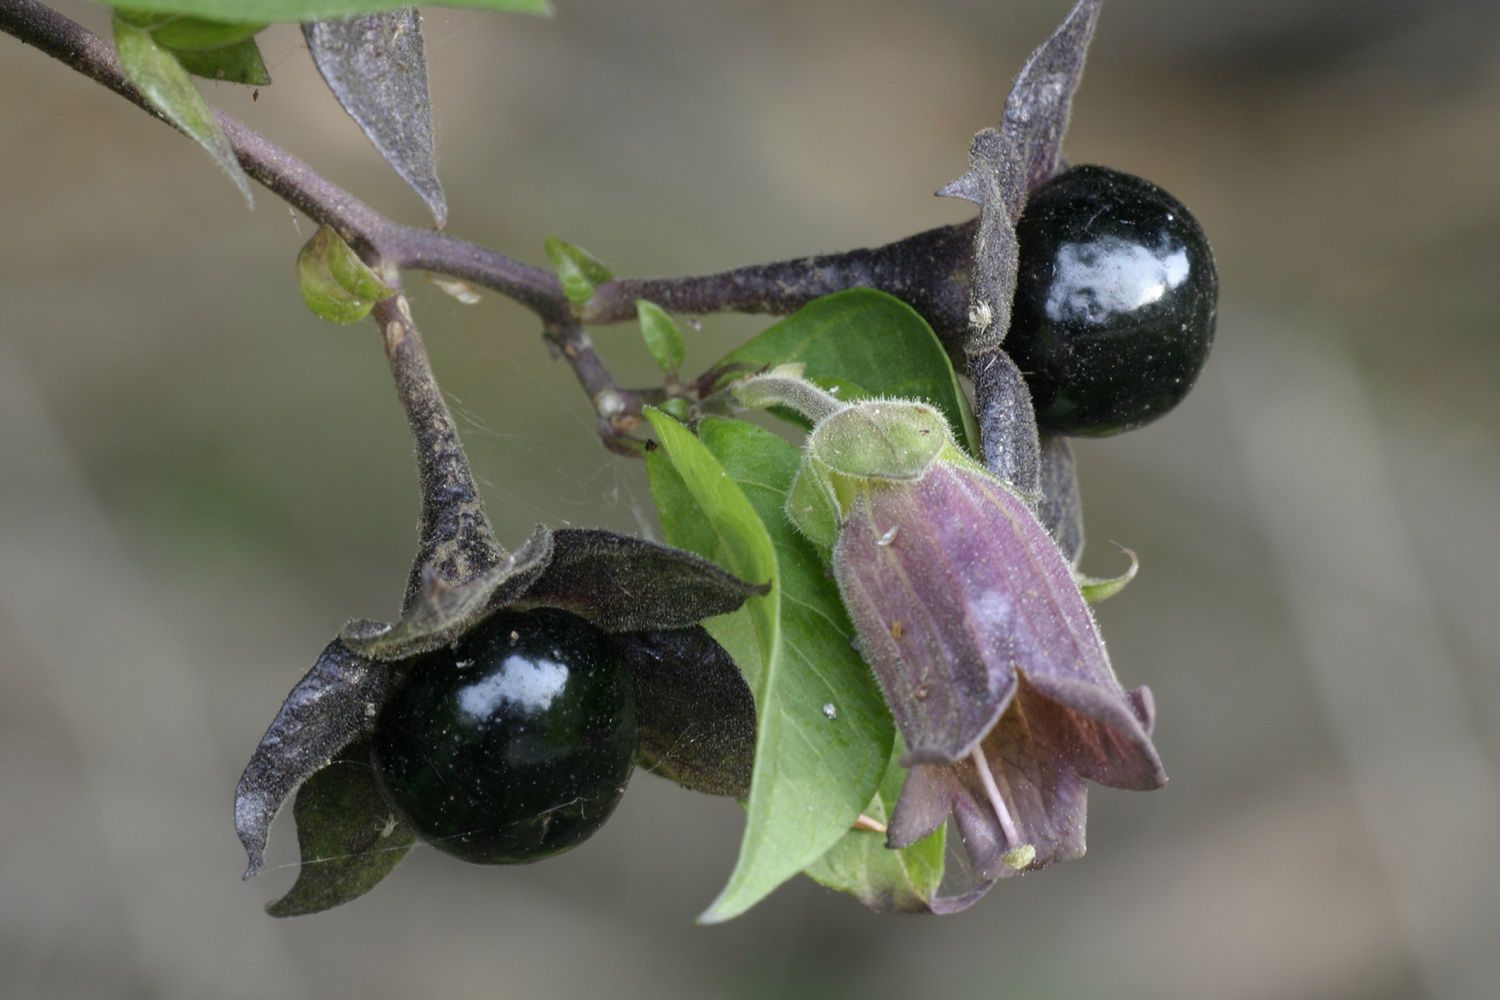 Owoc polskiego lasu, który może uśmiercić. Uważaj na "belladonnę"